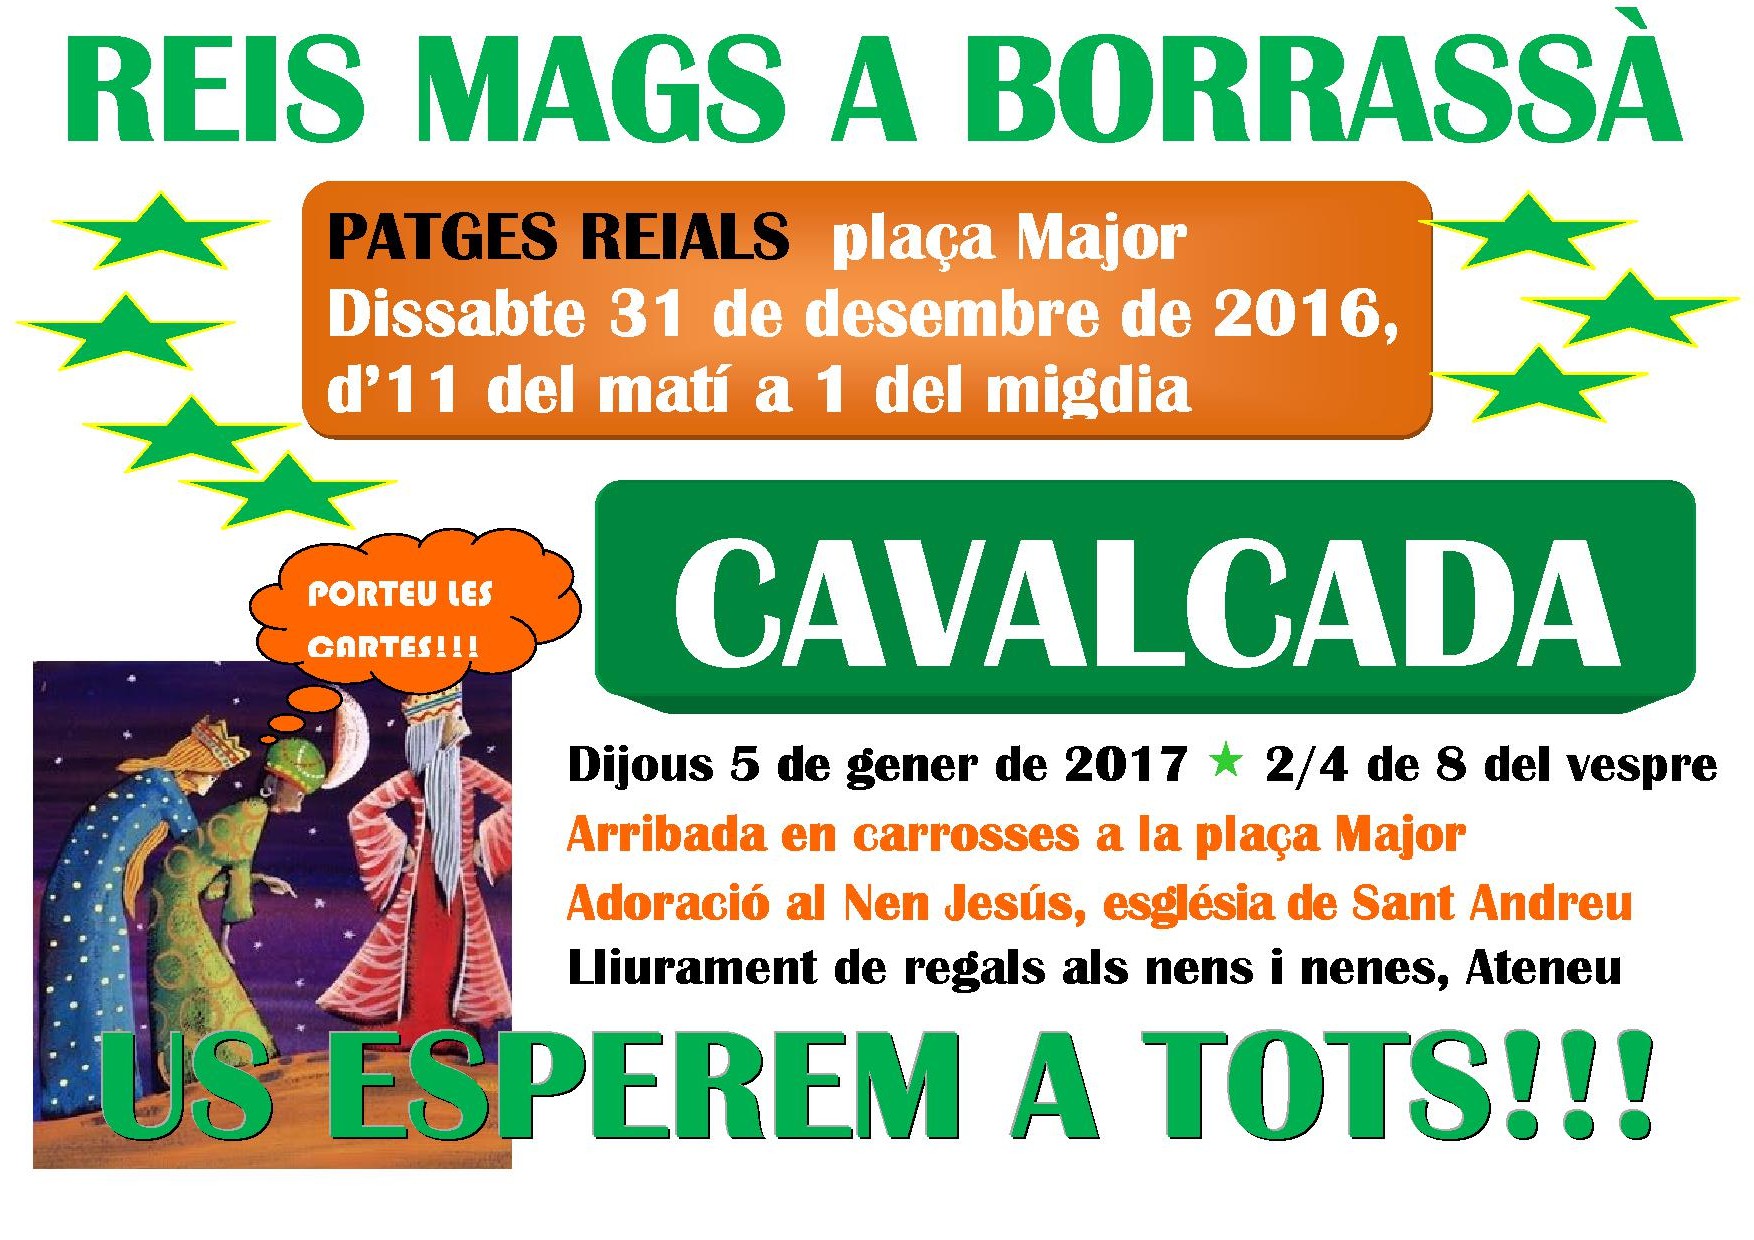 Els patges reials arribaran a Borrassà el dissabte, 31 de desembre de 2016, per recollir les cartes dels nens i de les nenes i donar-les als Reis Mags de l'Orient, que vindran al poble el dijous 5 de gener de 2017, a partir de 2/4 de 8 del vespre. 